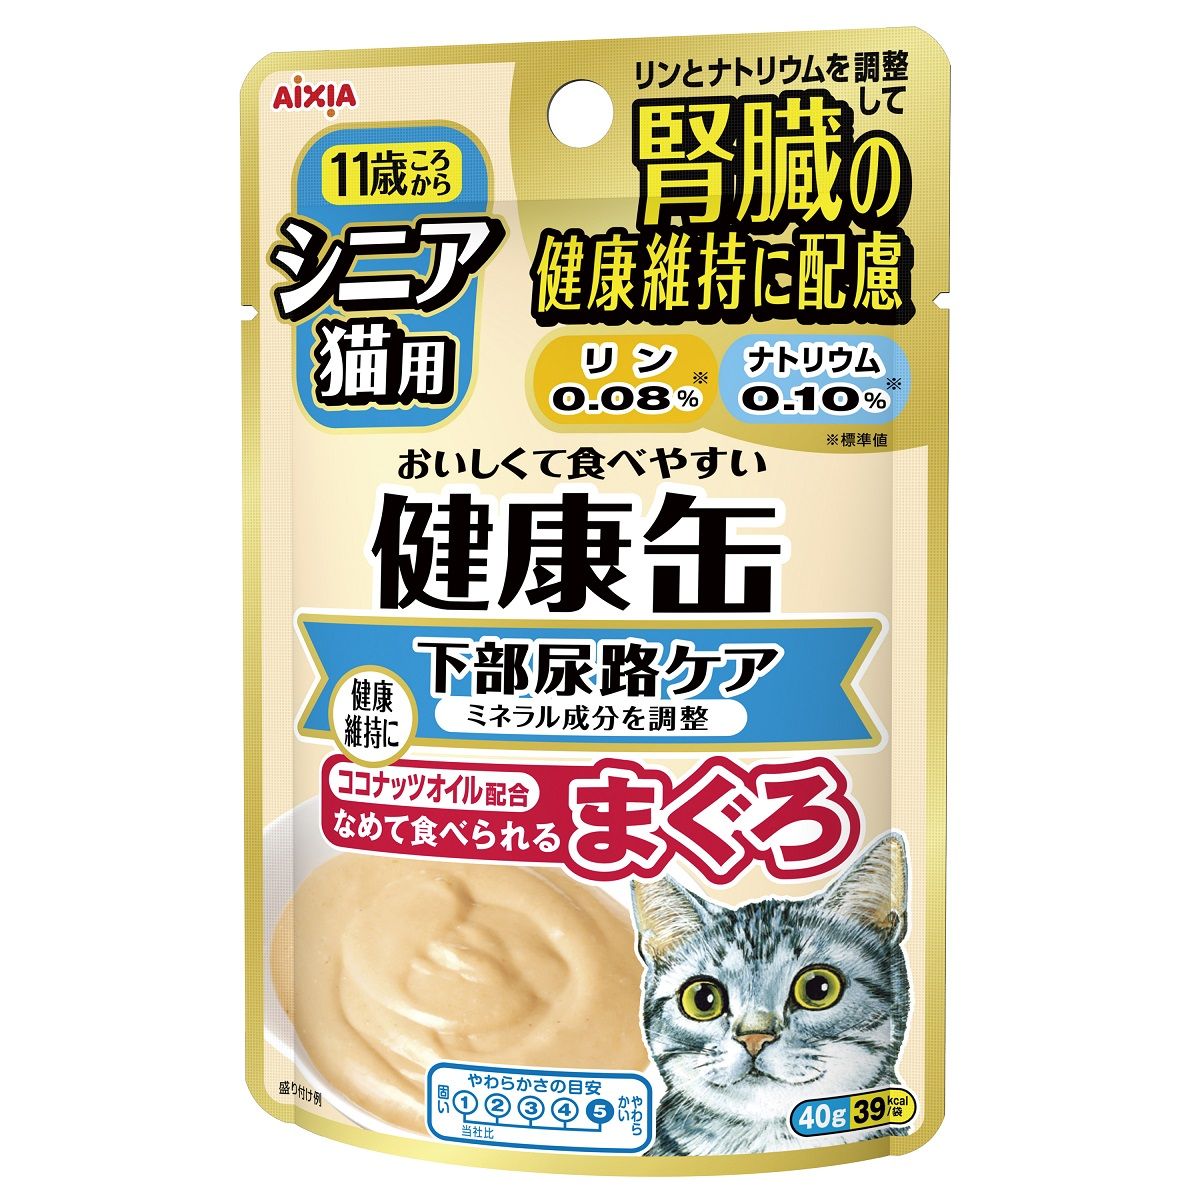 シニア猫用 健康缶パウチ 下部尿路ケア 40g×48袋